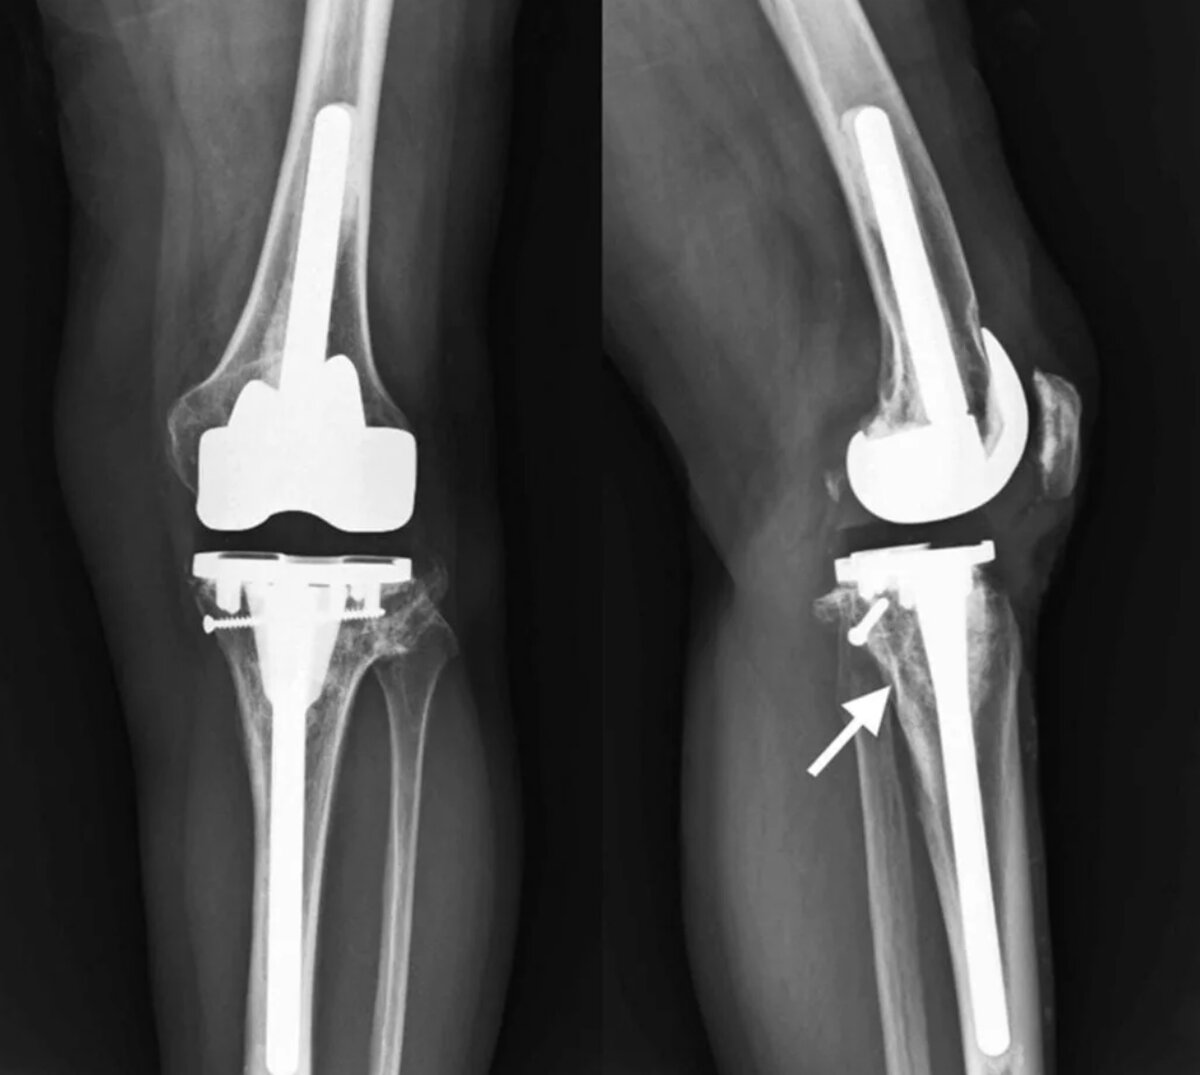 Операции на коленном суставе стоимость. Эндопротез коленного сустава. Коленный эндопротез Stryker. Эндопротезирование коленного сустава операция. Эндопротез коленного сустава Maxx Orthopedics.